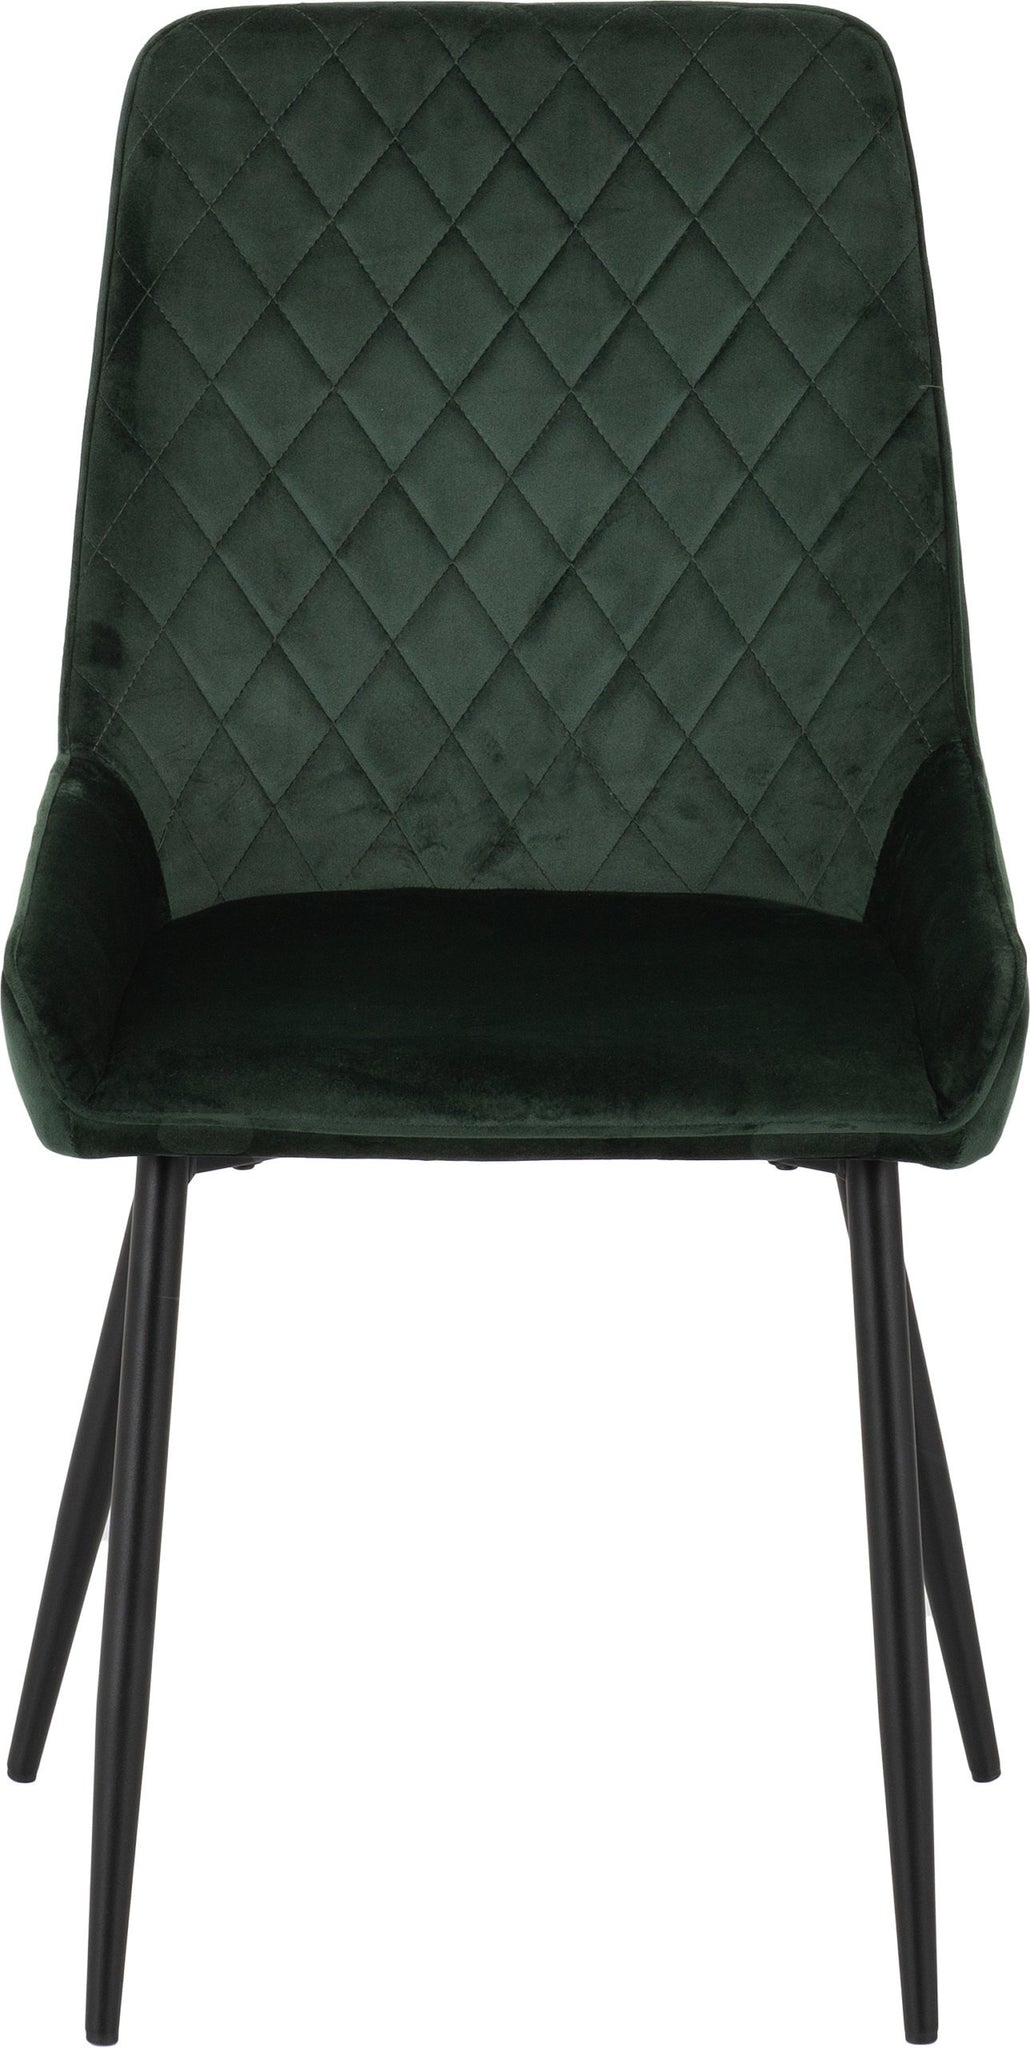 Avery Chair Emerald Green Velvet - The Right Buy Store